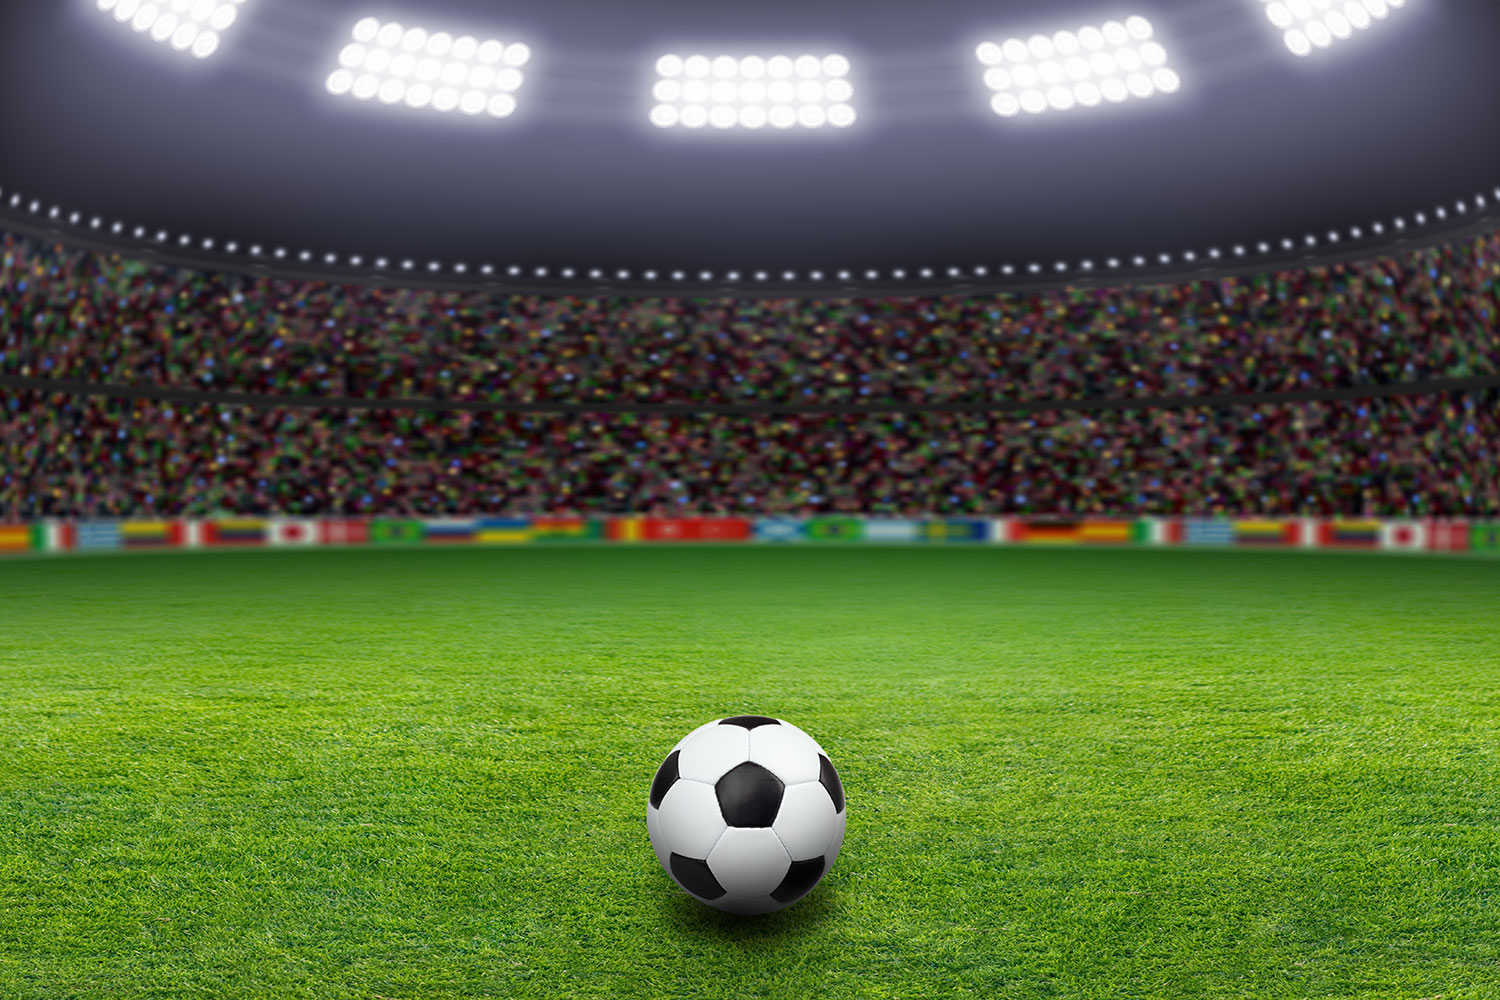 fond d'écran de football,football,ballon de football,stade,stade spécifique au football,joueur